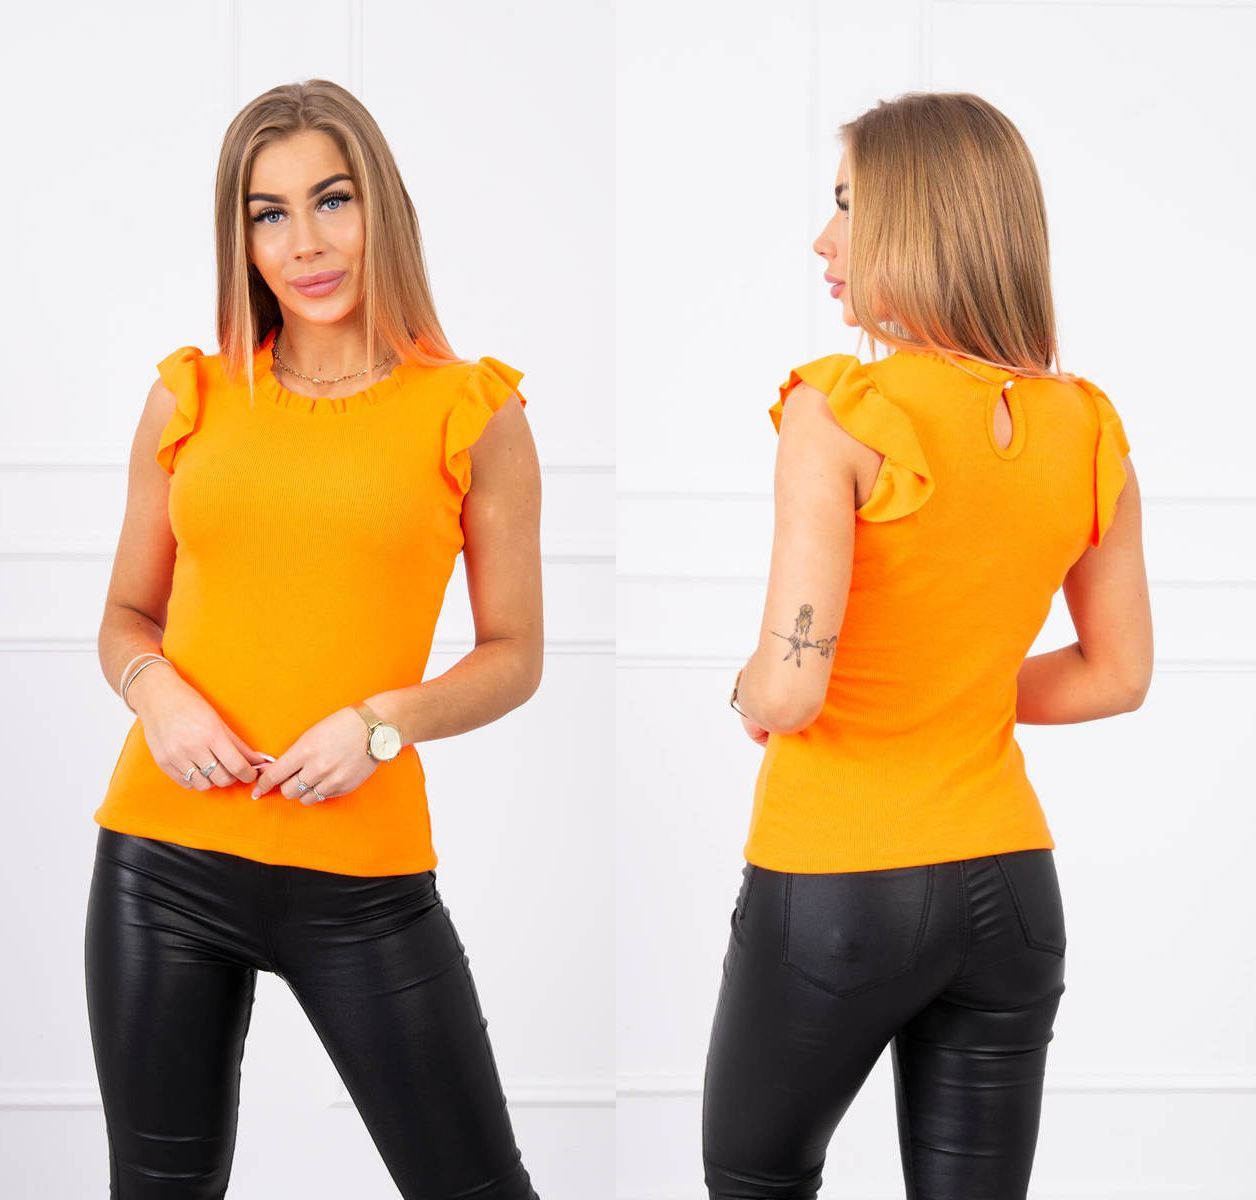 Tričko s volánky Mabelle neonově oranžové Velikost: Univerzální